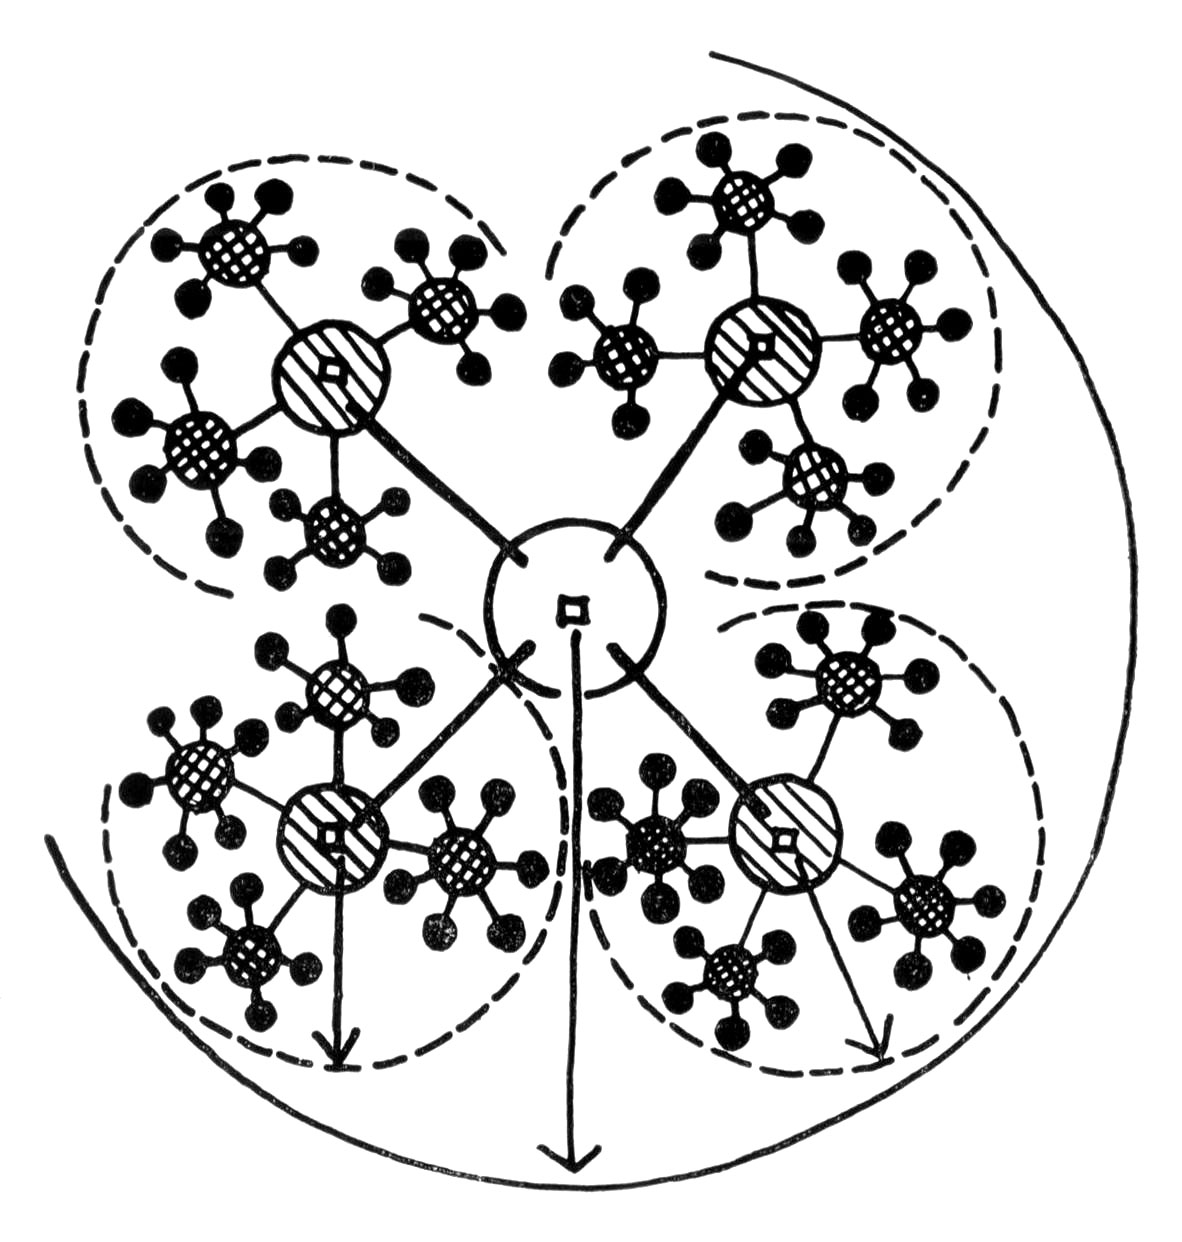 Рис. 5. Схема ступенчатой системы организации города